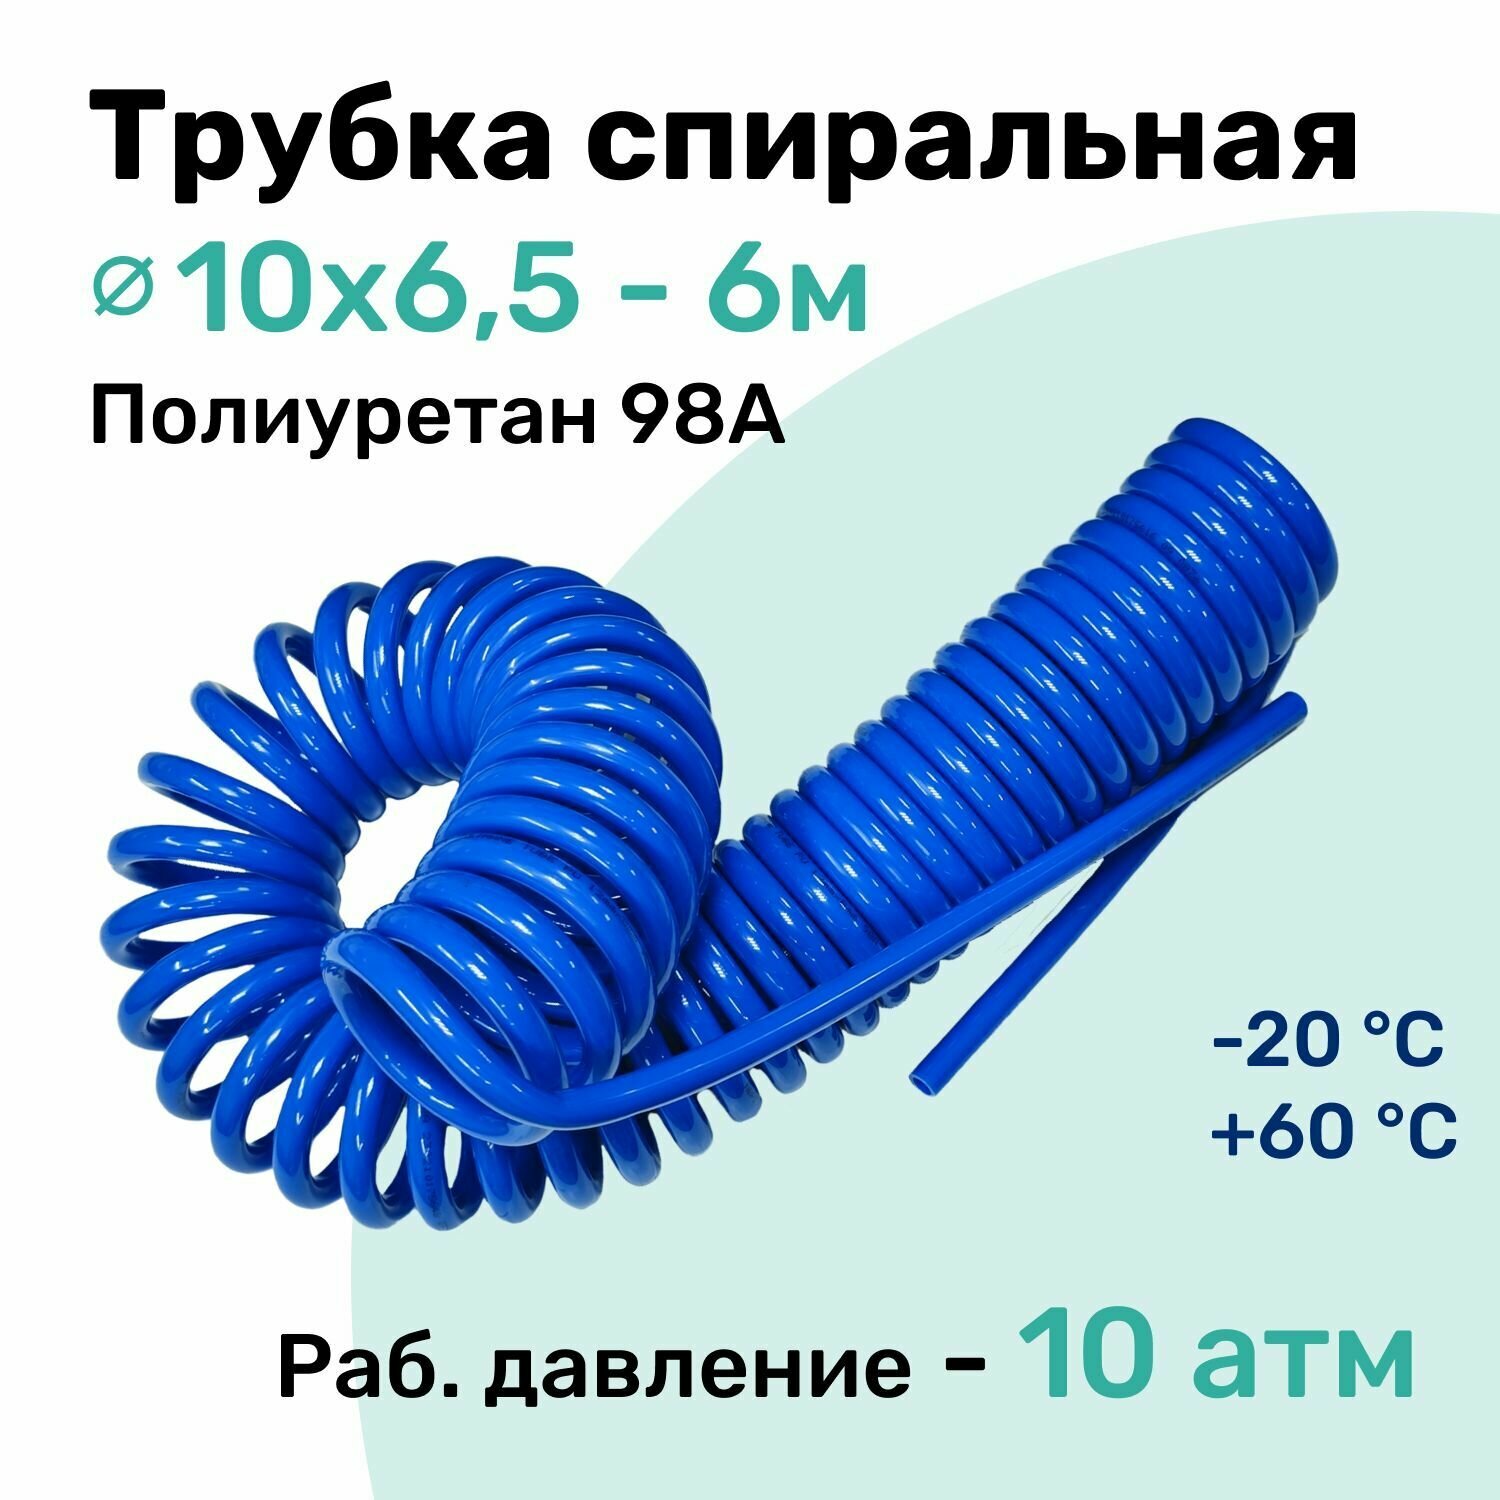 Пневмотрубка спиральная 10х6,5мм, полиуретановая PU98A, 6м, 10 атм, Синий, Шланг спиральный пневматический NBPT